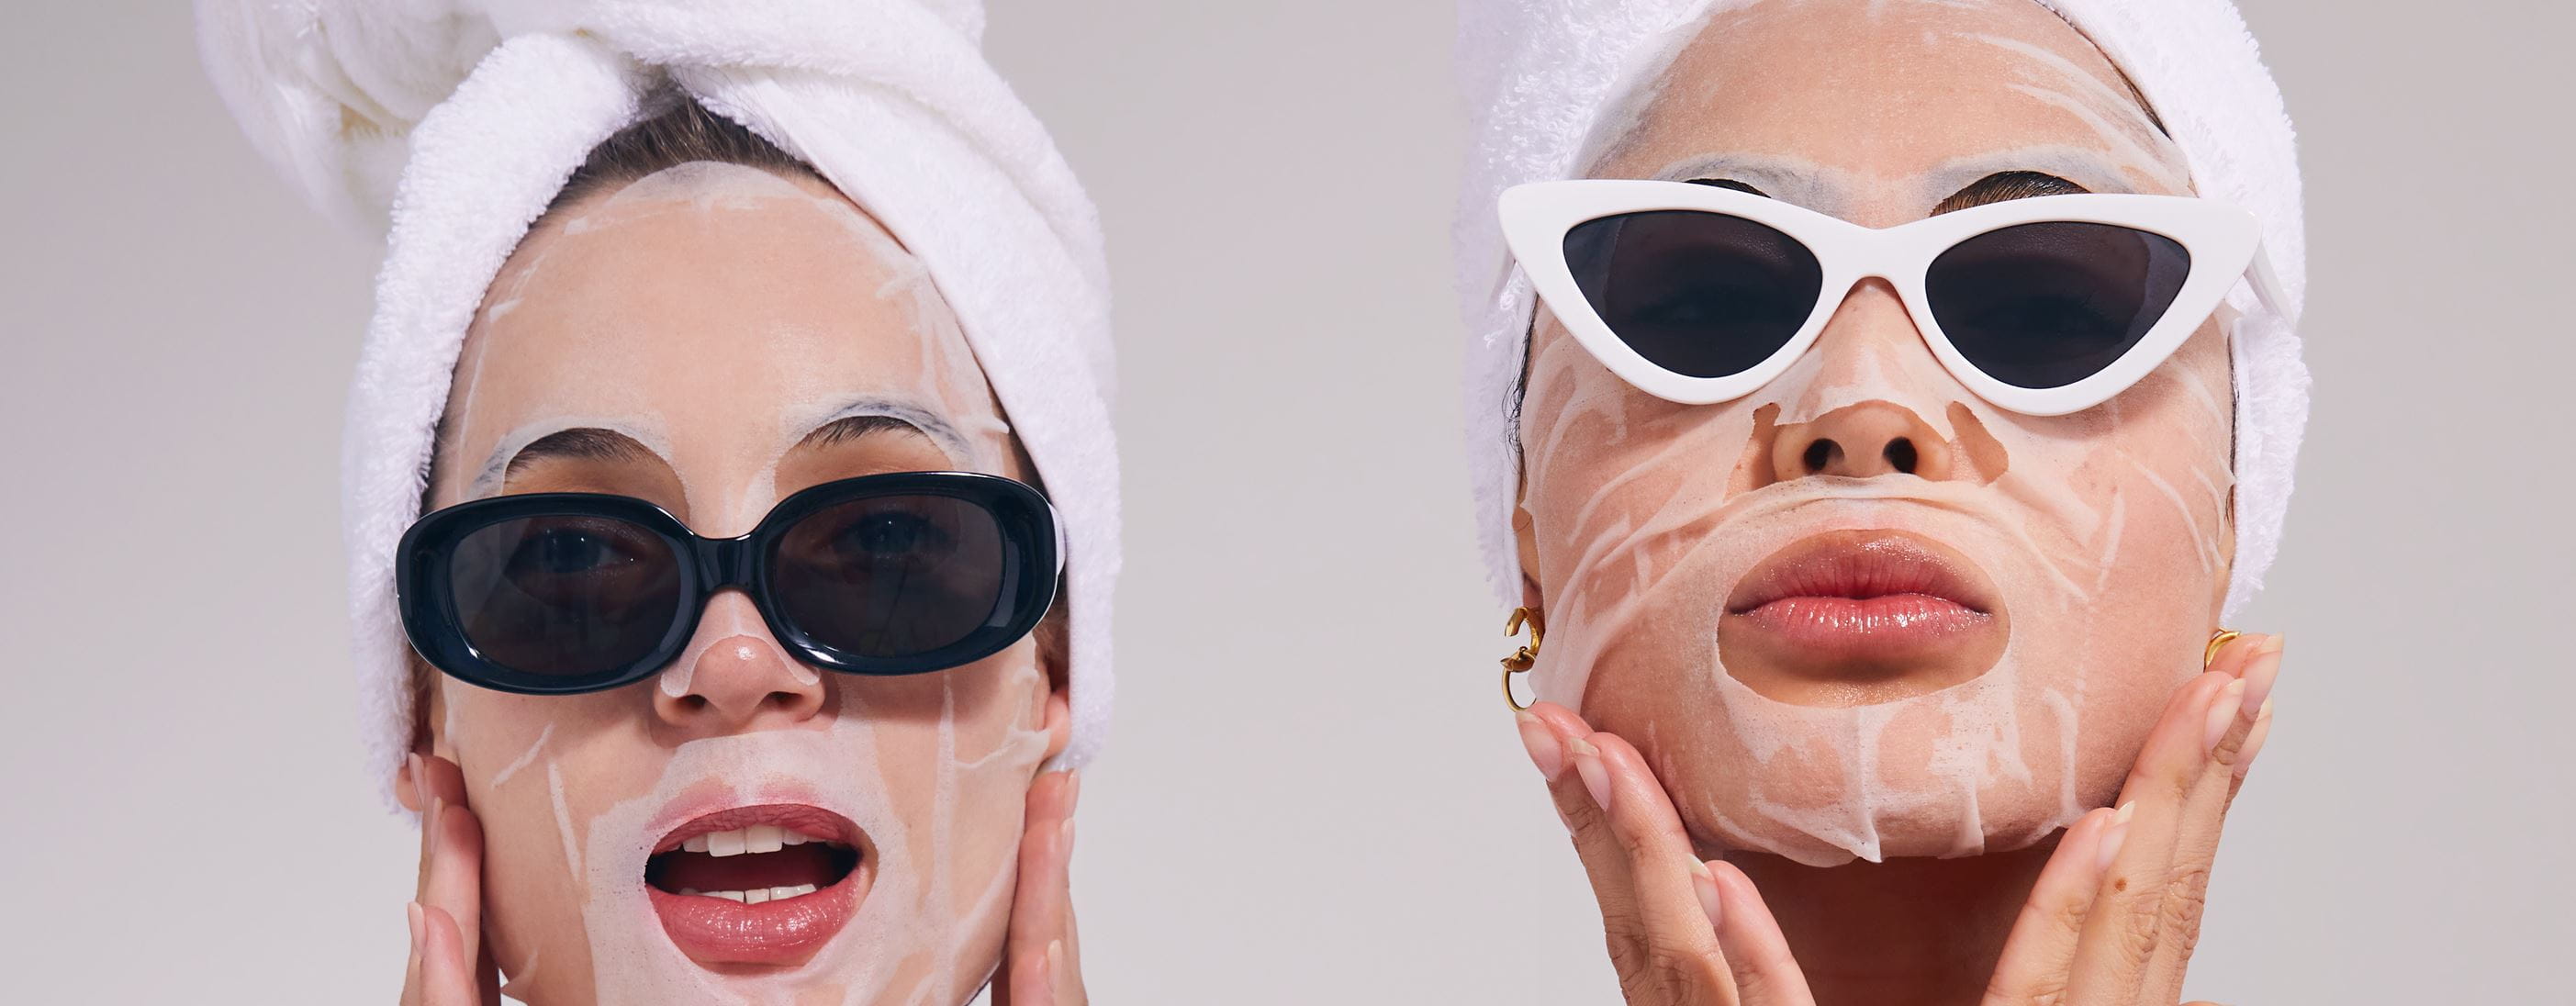 Zwei Mädchen tragen Nivea-Gesichtsmasken